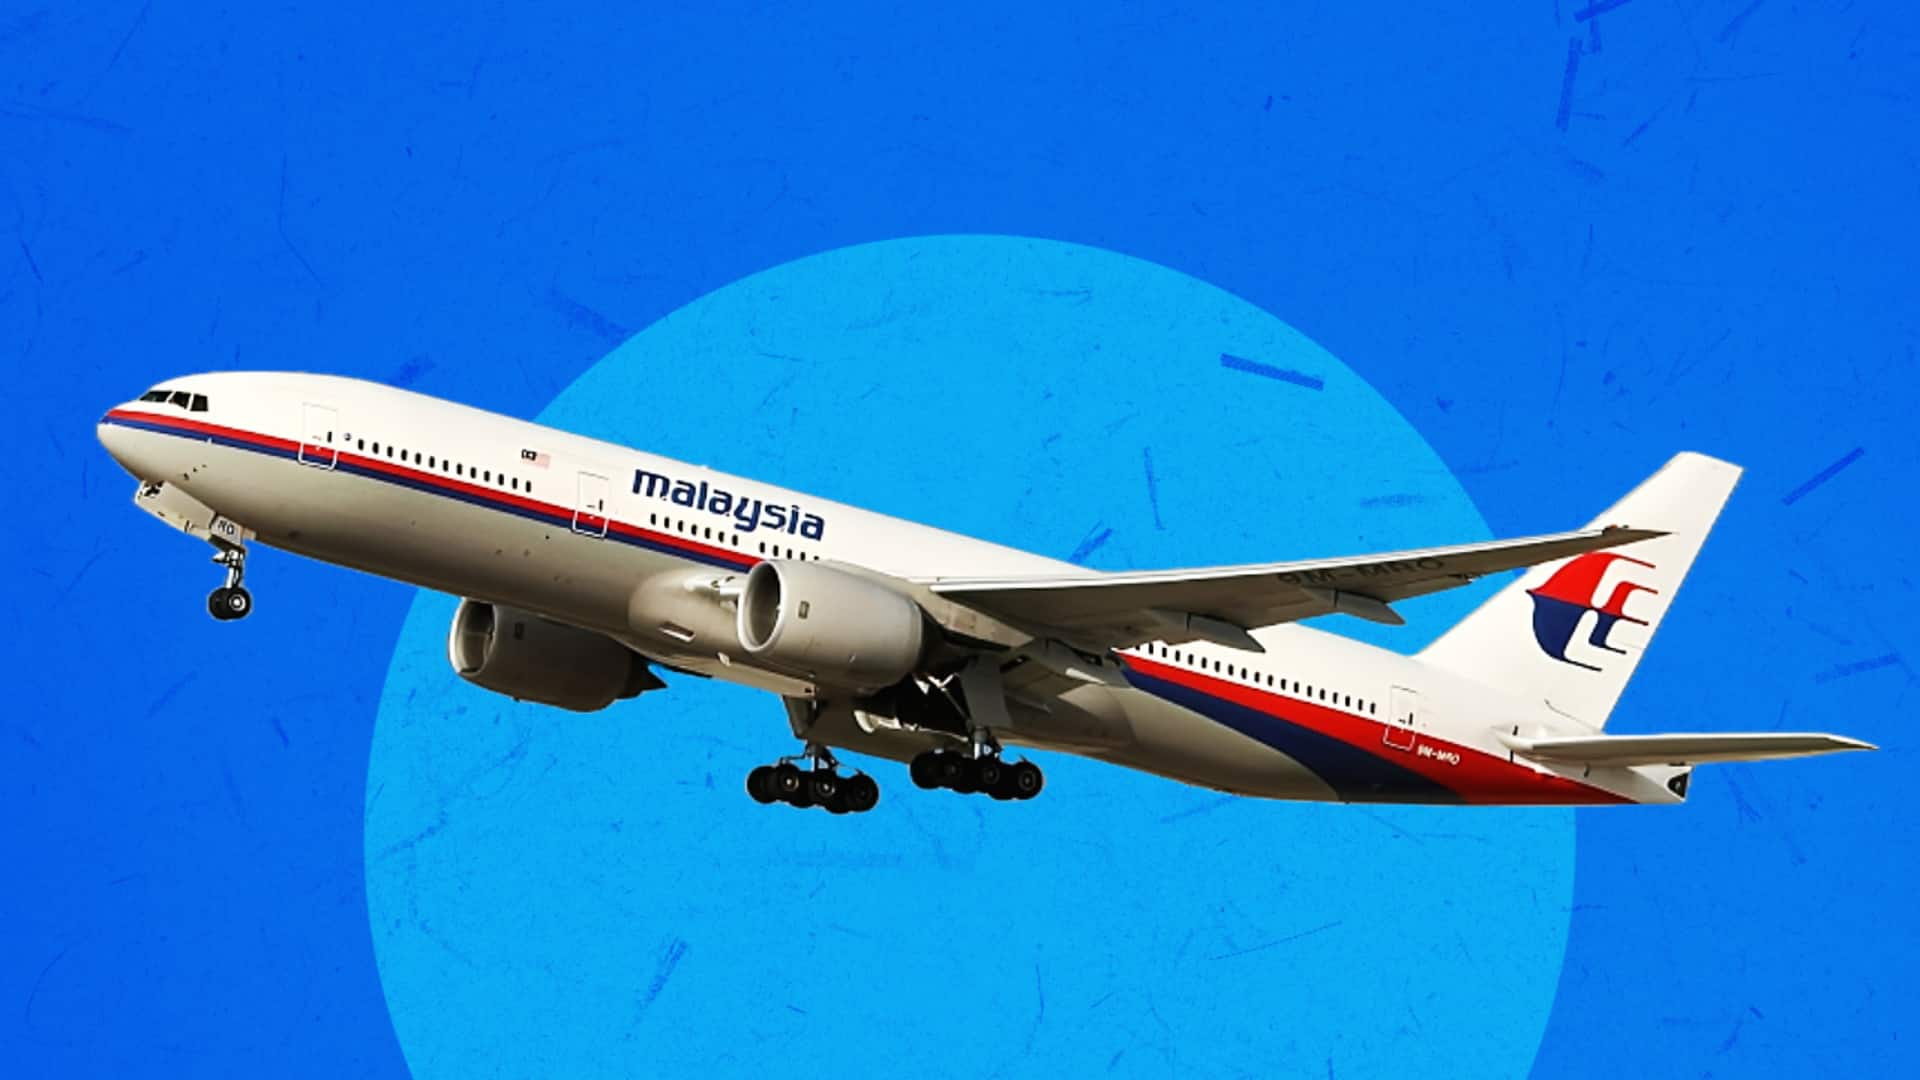 हैदराबाद से कुआलालंपुर जा रही मलेशिया एयरलाइंस की उड़ान का इंजन खराब, आधे रास्ते से लौटी